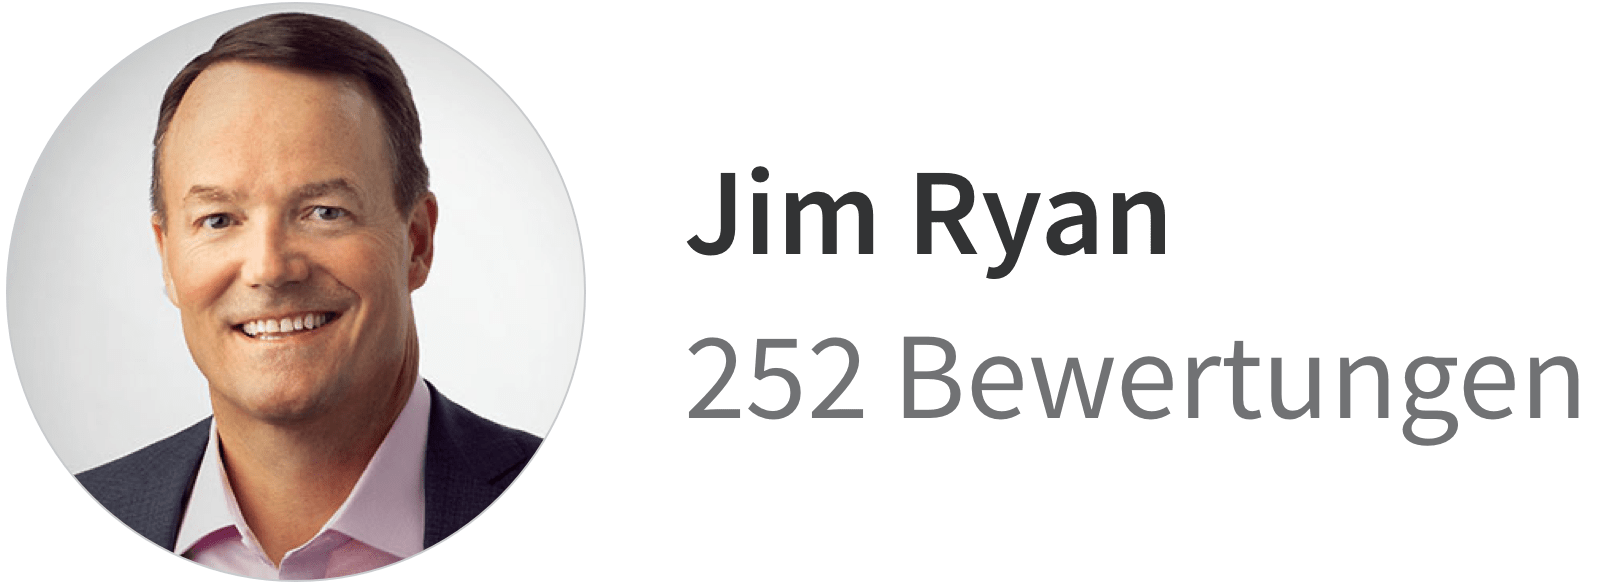 252 ratings for Jim Ryan on Glassdoor